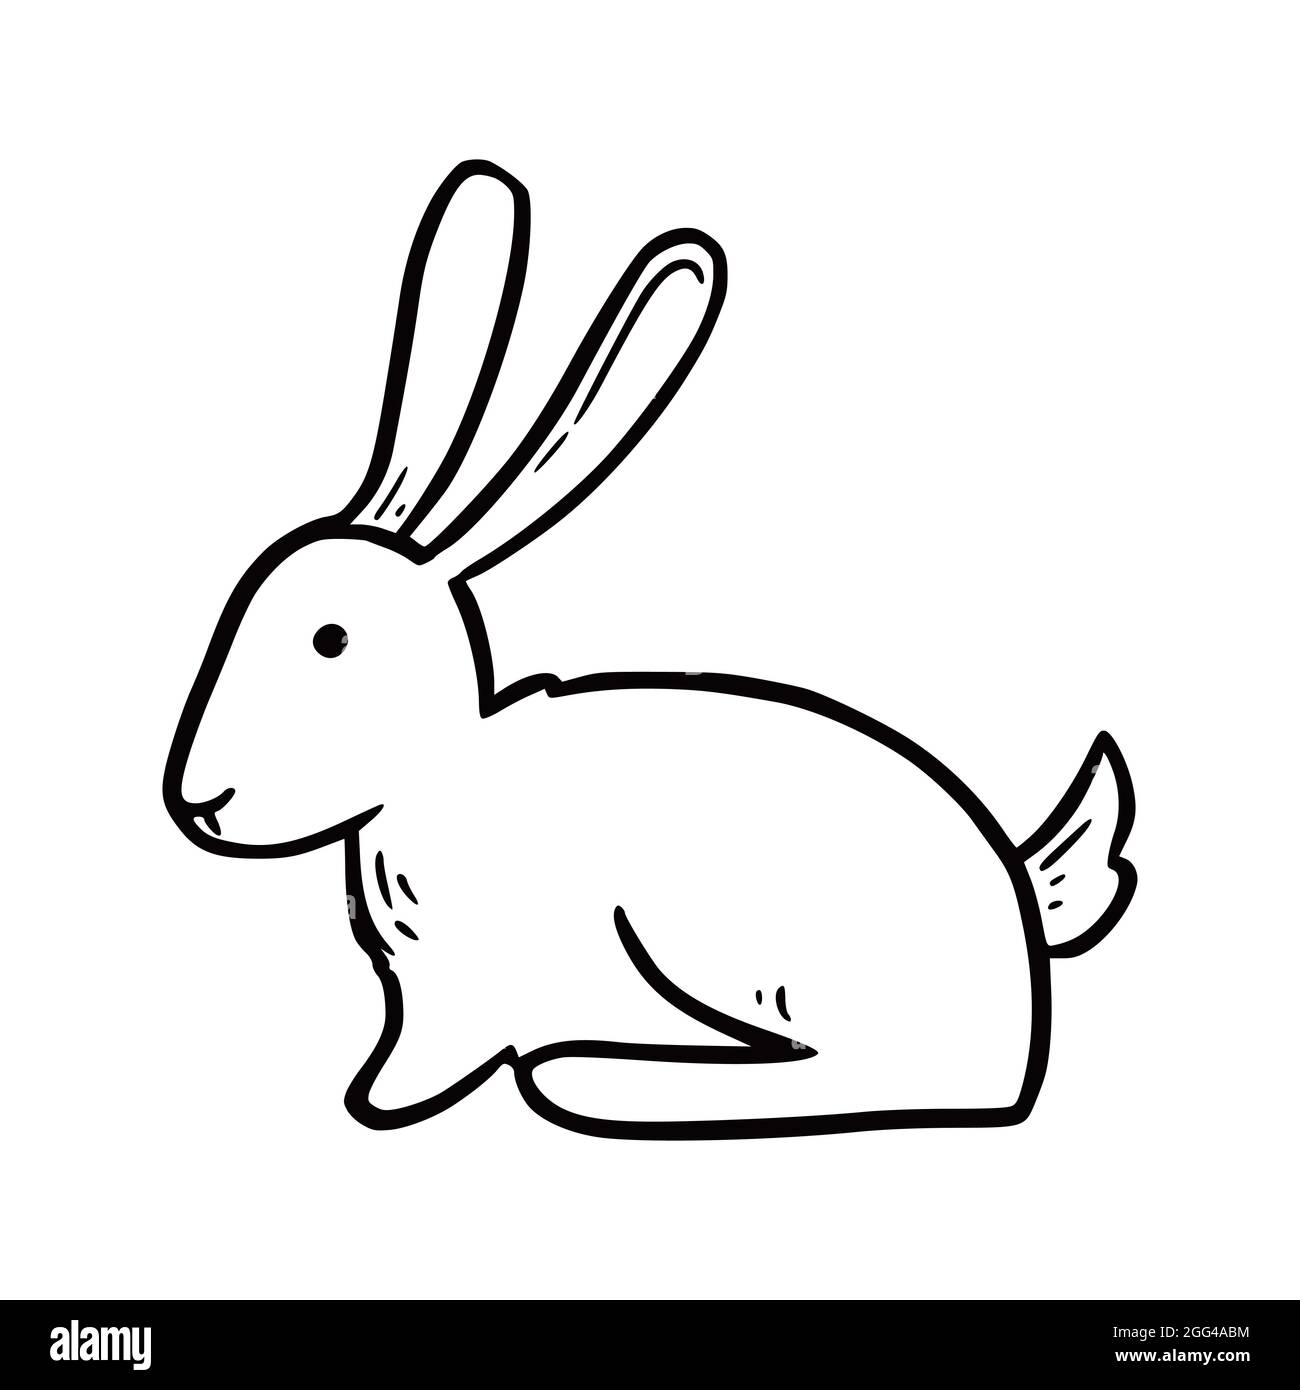 Easy Ways to Draw a Rabbit - Learn How to Draw a Rabbit | Desenhos fáceis,  Atividades de arte, Desenhos animados